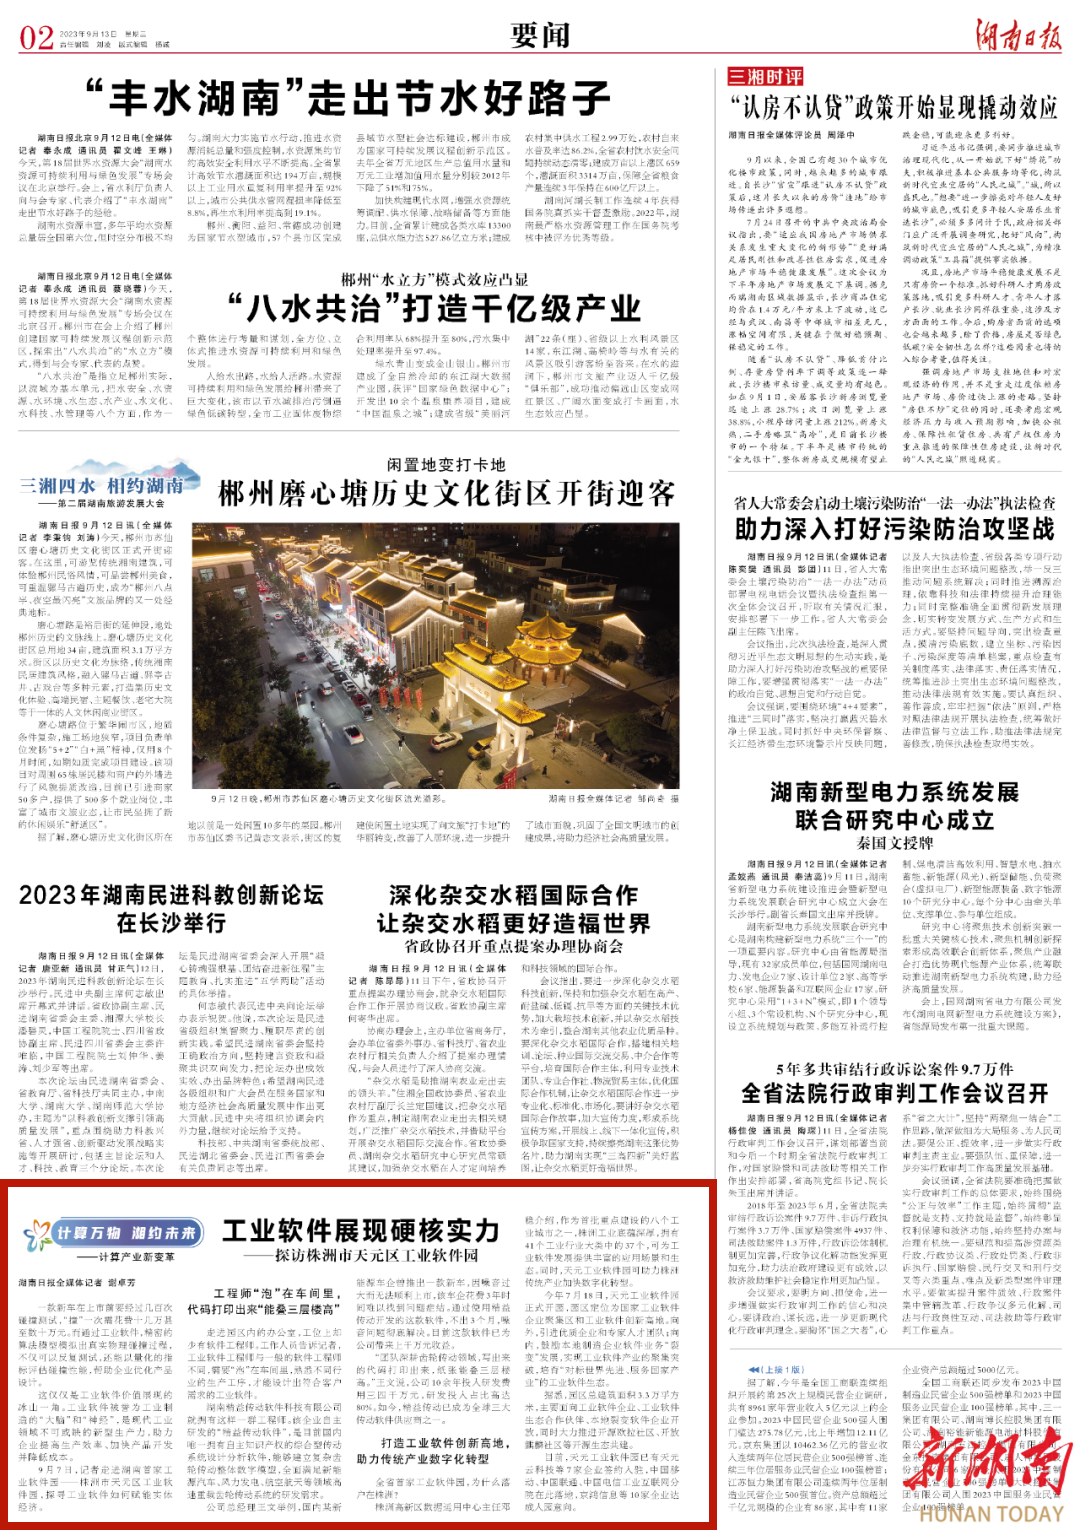 湖南日报丨工业软件展现硬核实力——探访株洲市天元区工业软件园